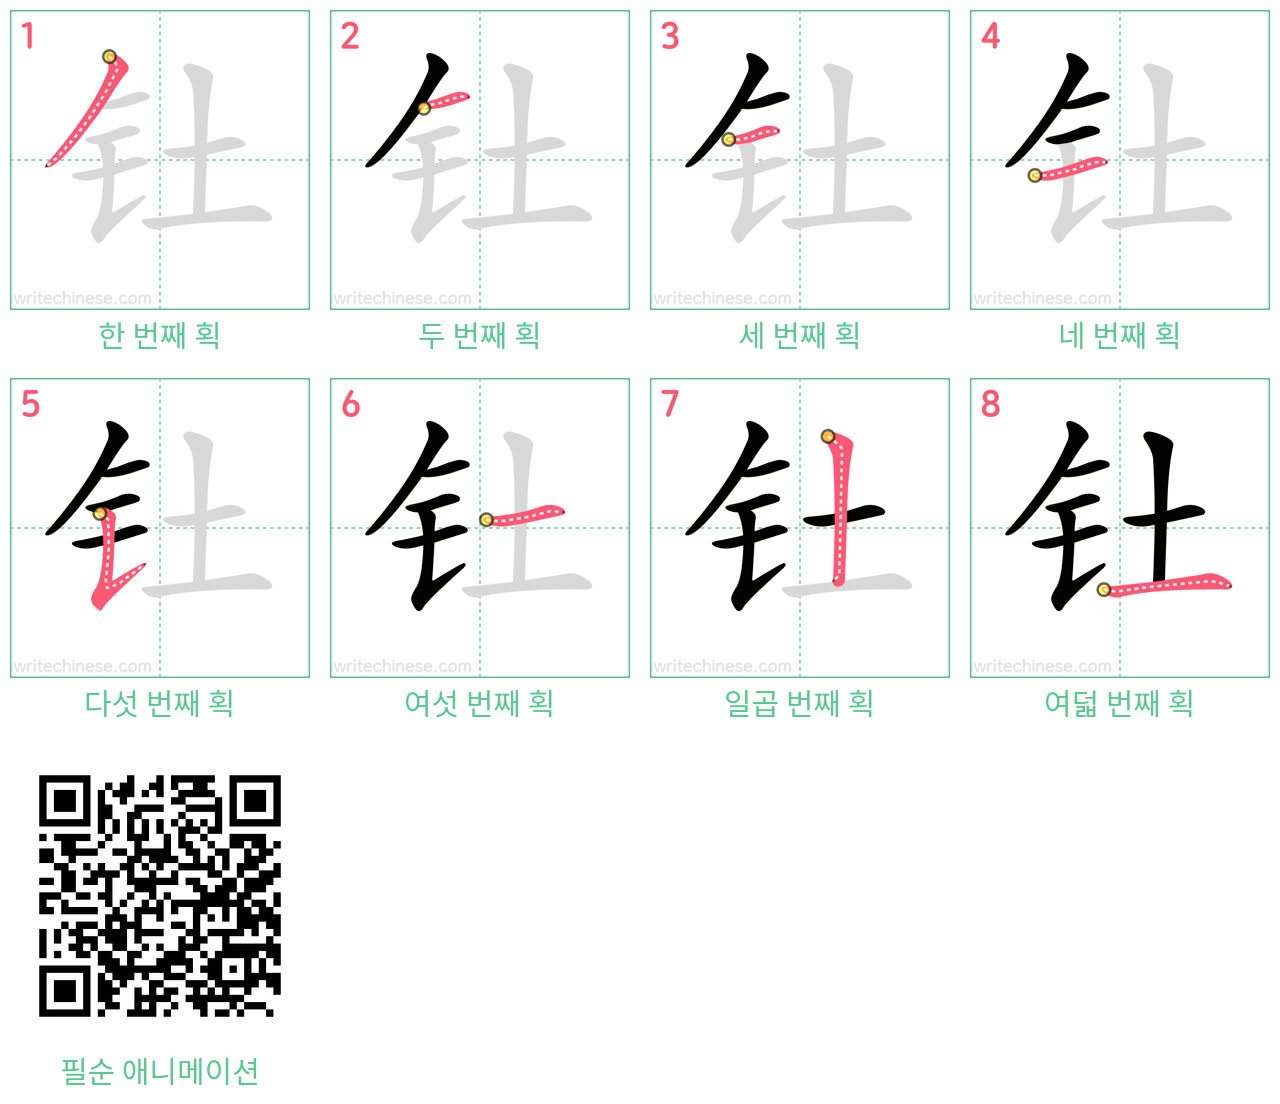 钍 step-by-step stroke order diagrams